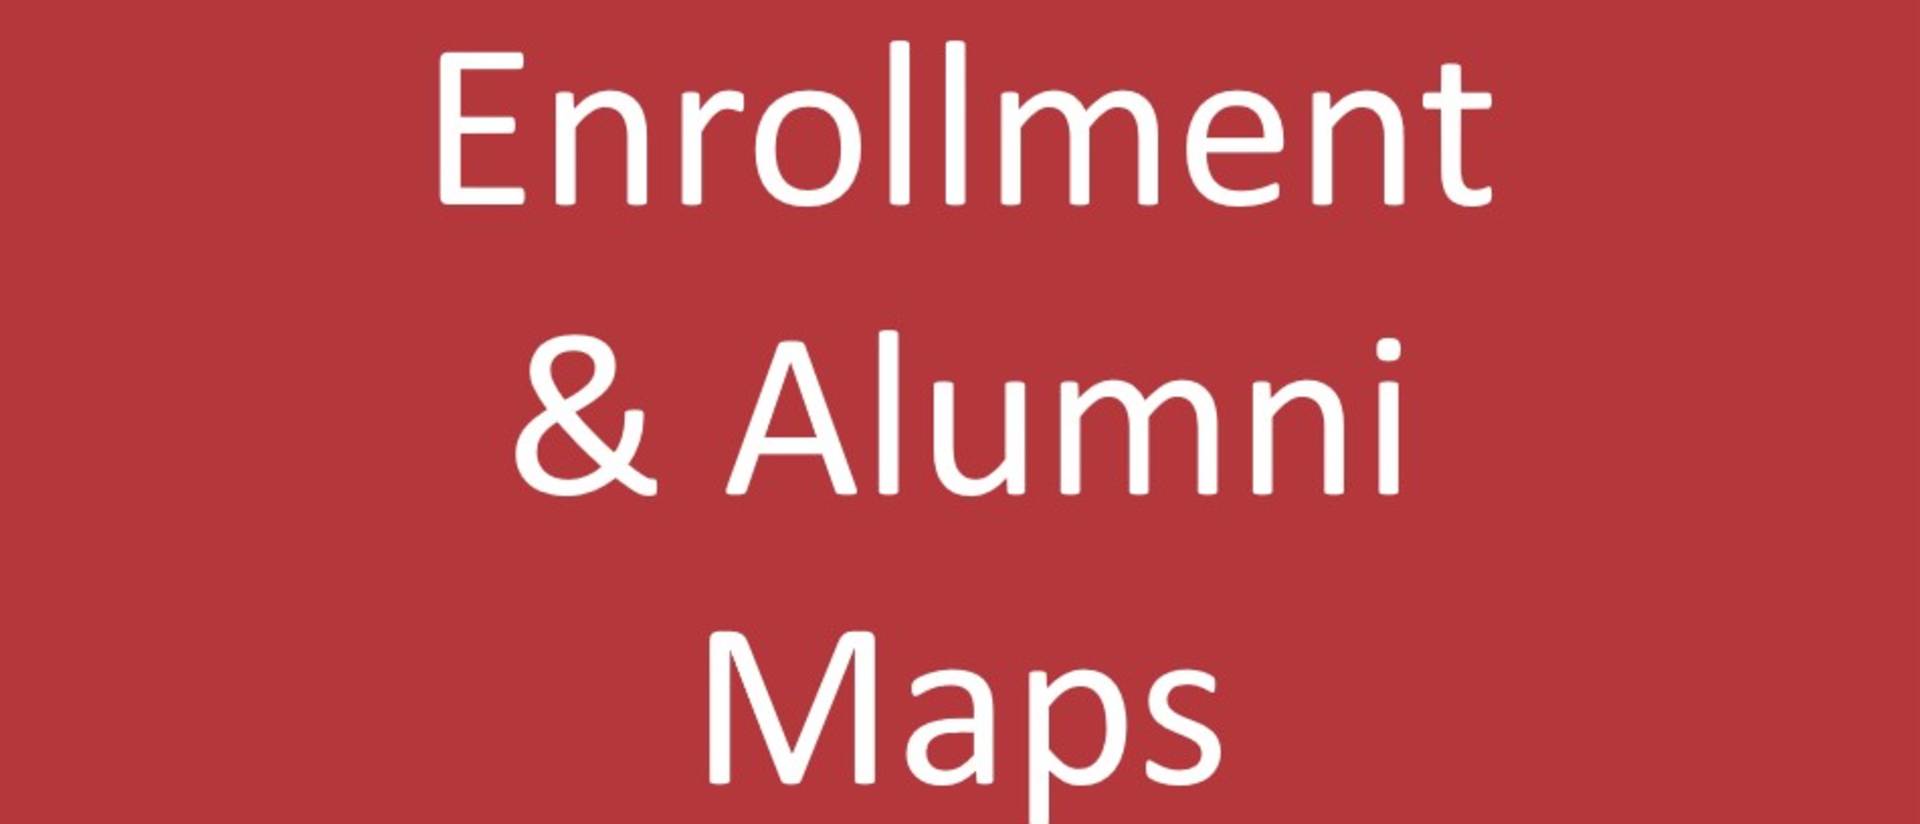 Enrollment & Alumni Maps